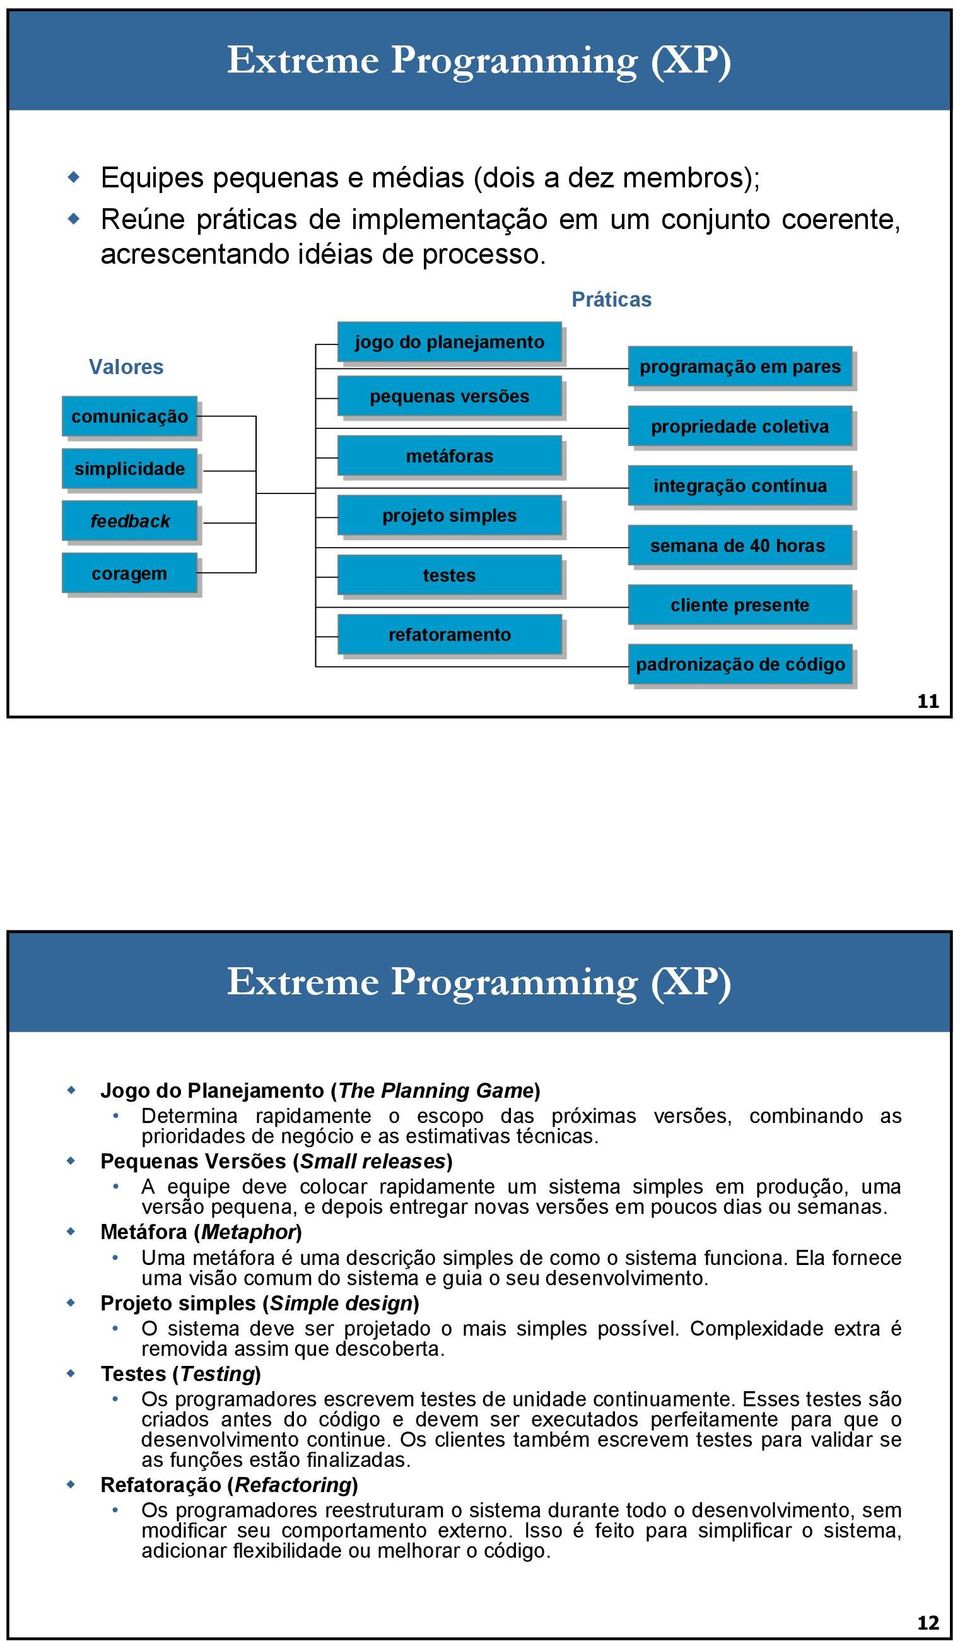 integração contínua semana de de 40 40 horas cliente presente padronização de de código 11 Extreme Programming (XP) Jogo do Planejamento (The Planning Game) Determina rapidamente o escopo das